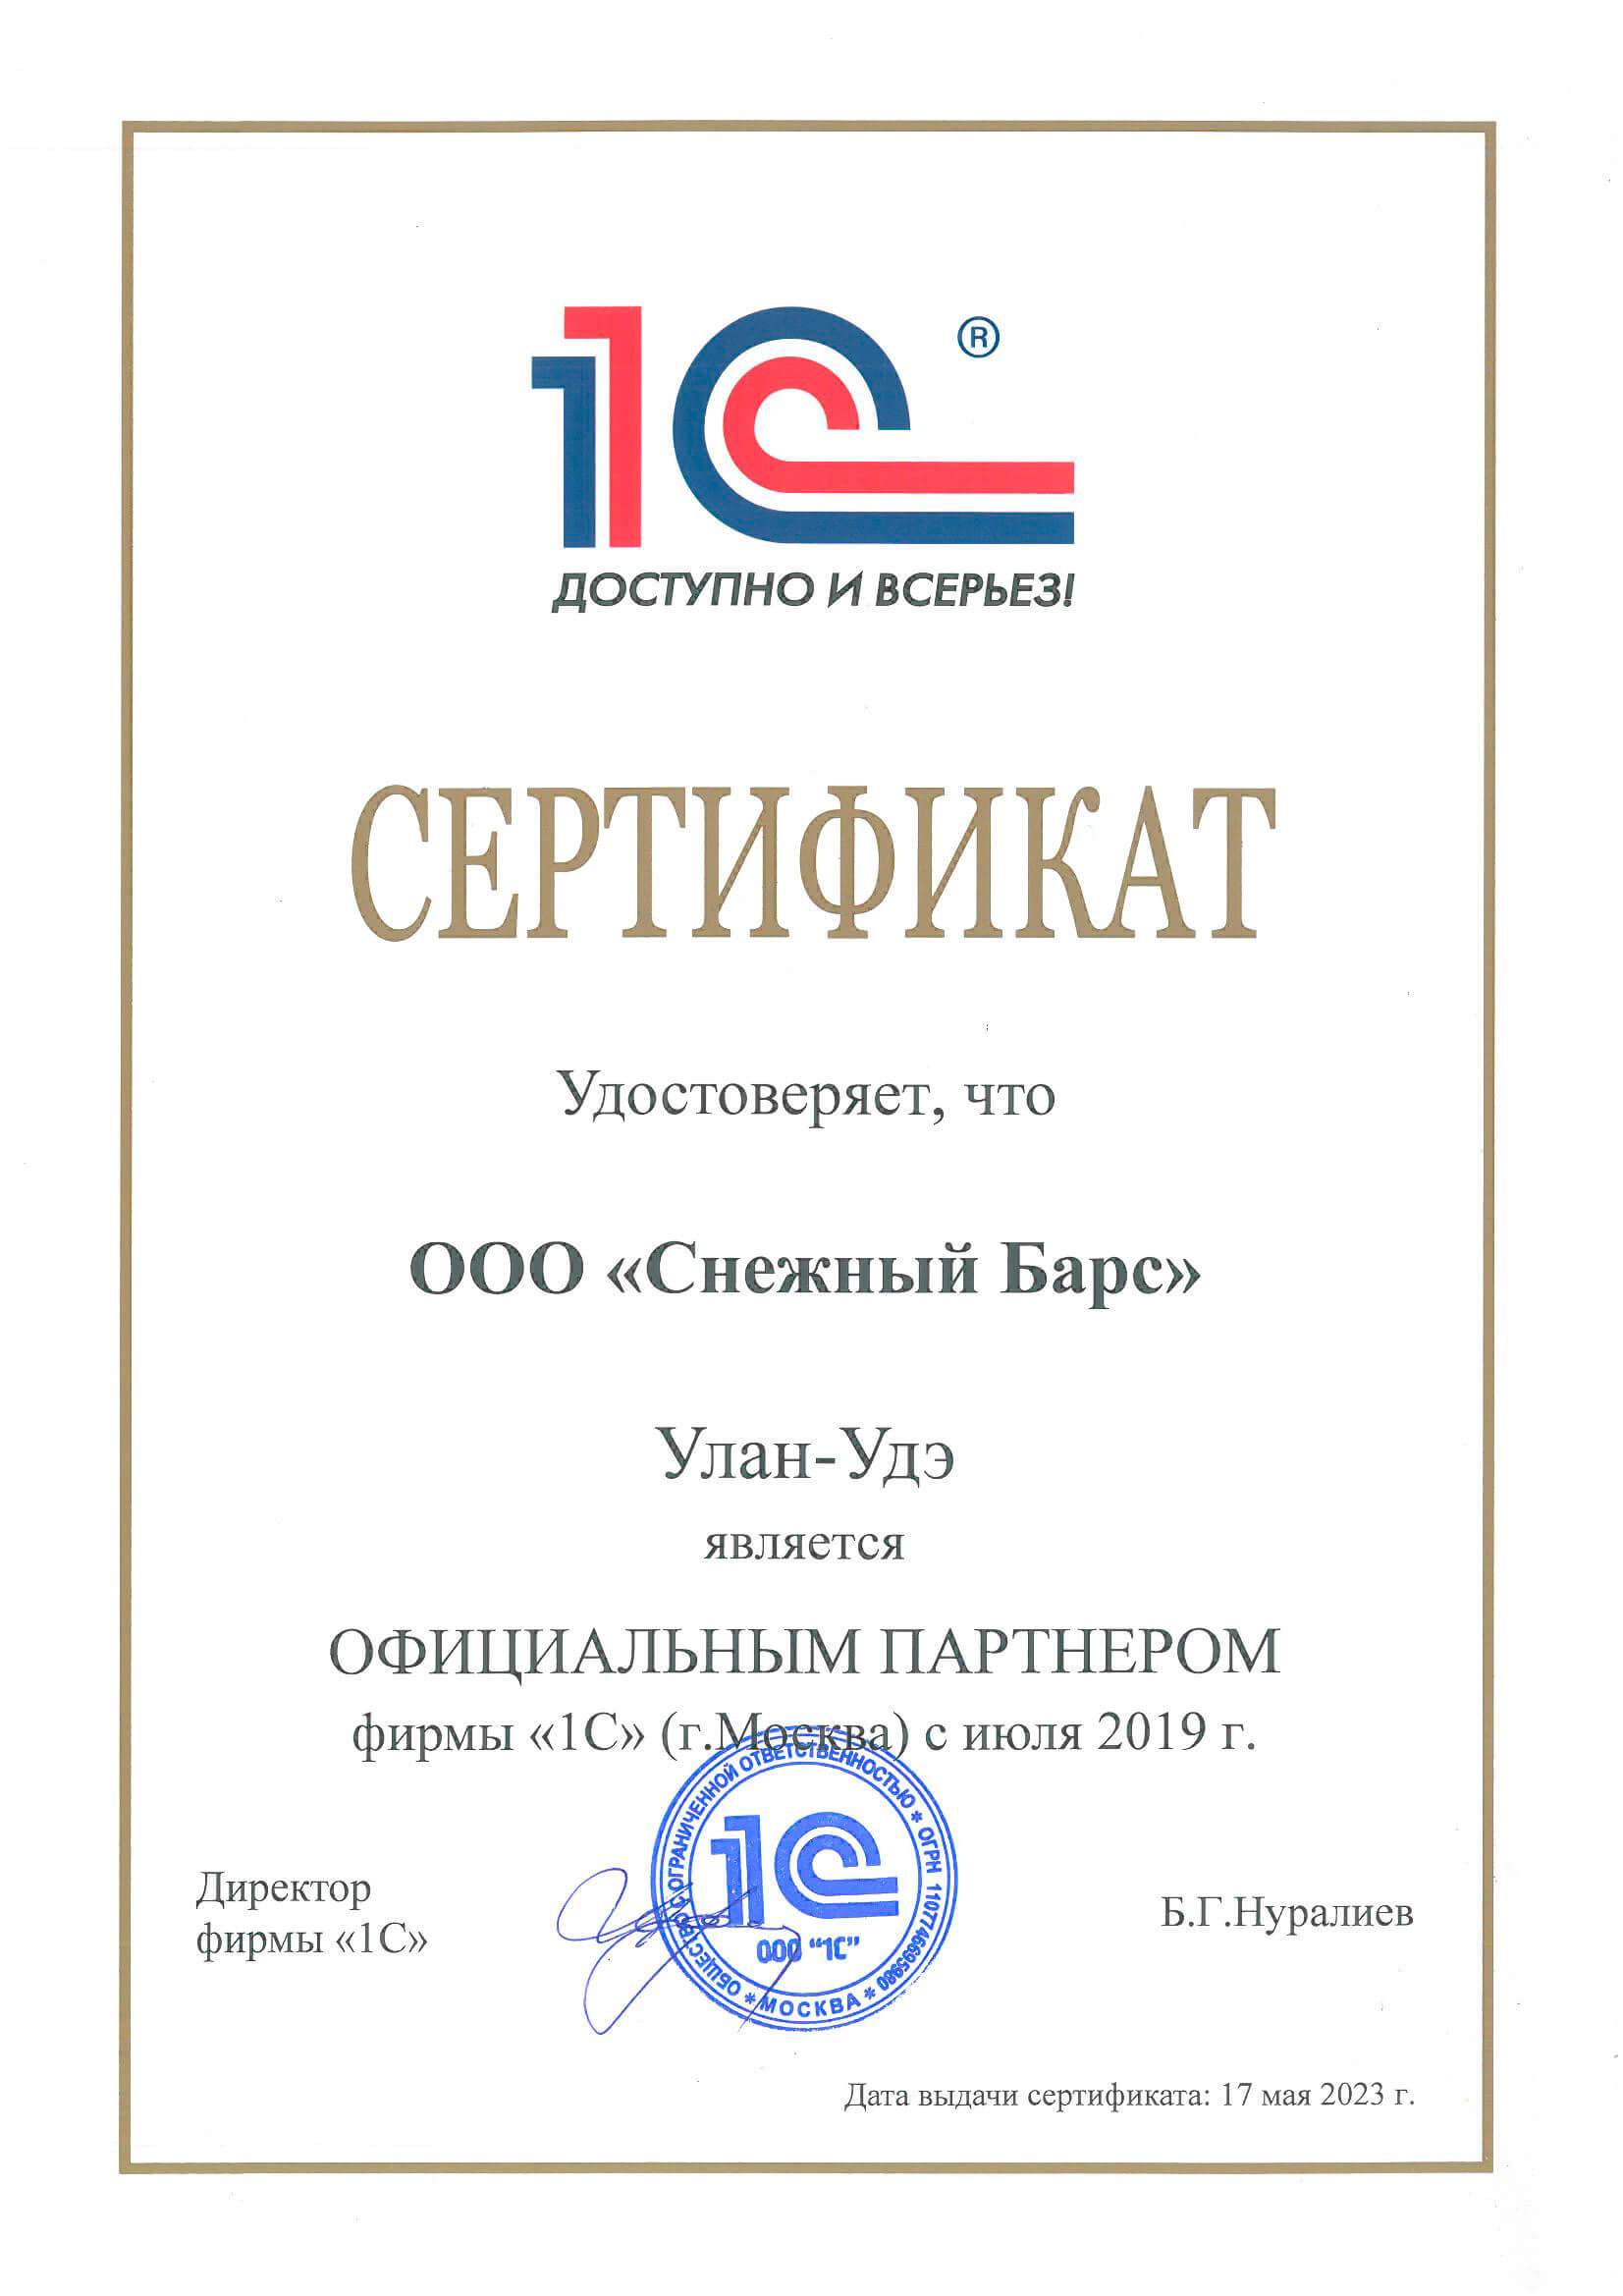 Сертификат официального партнера 1С